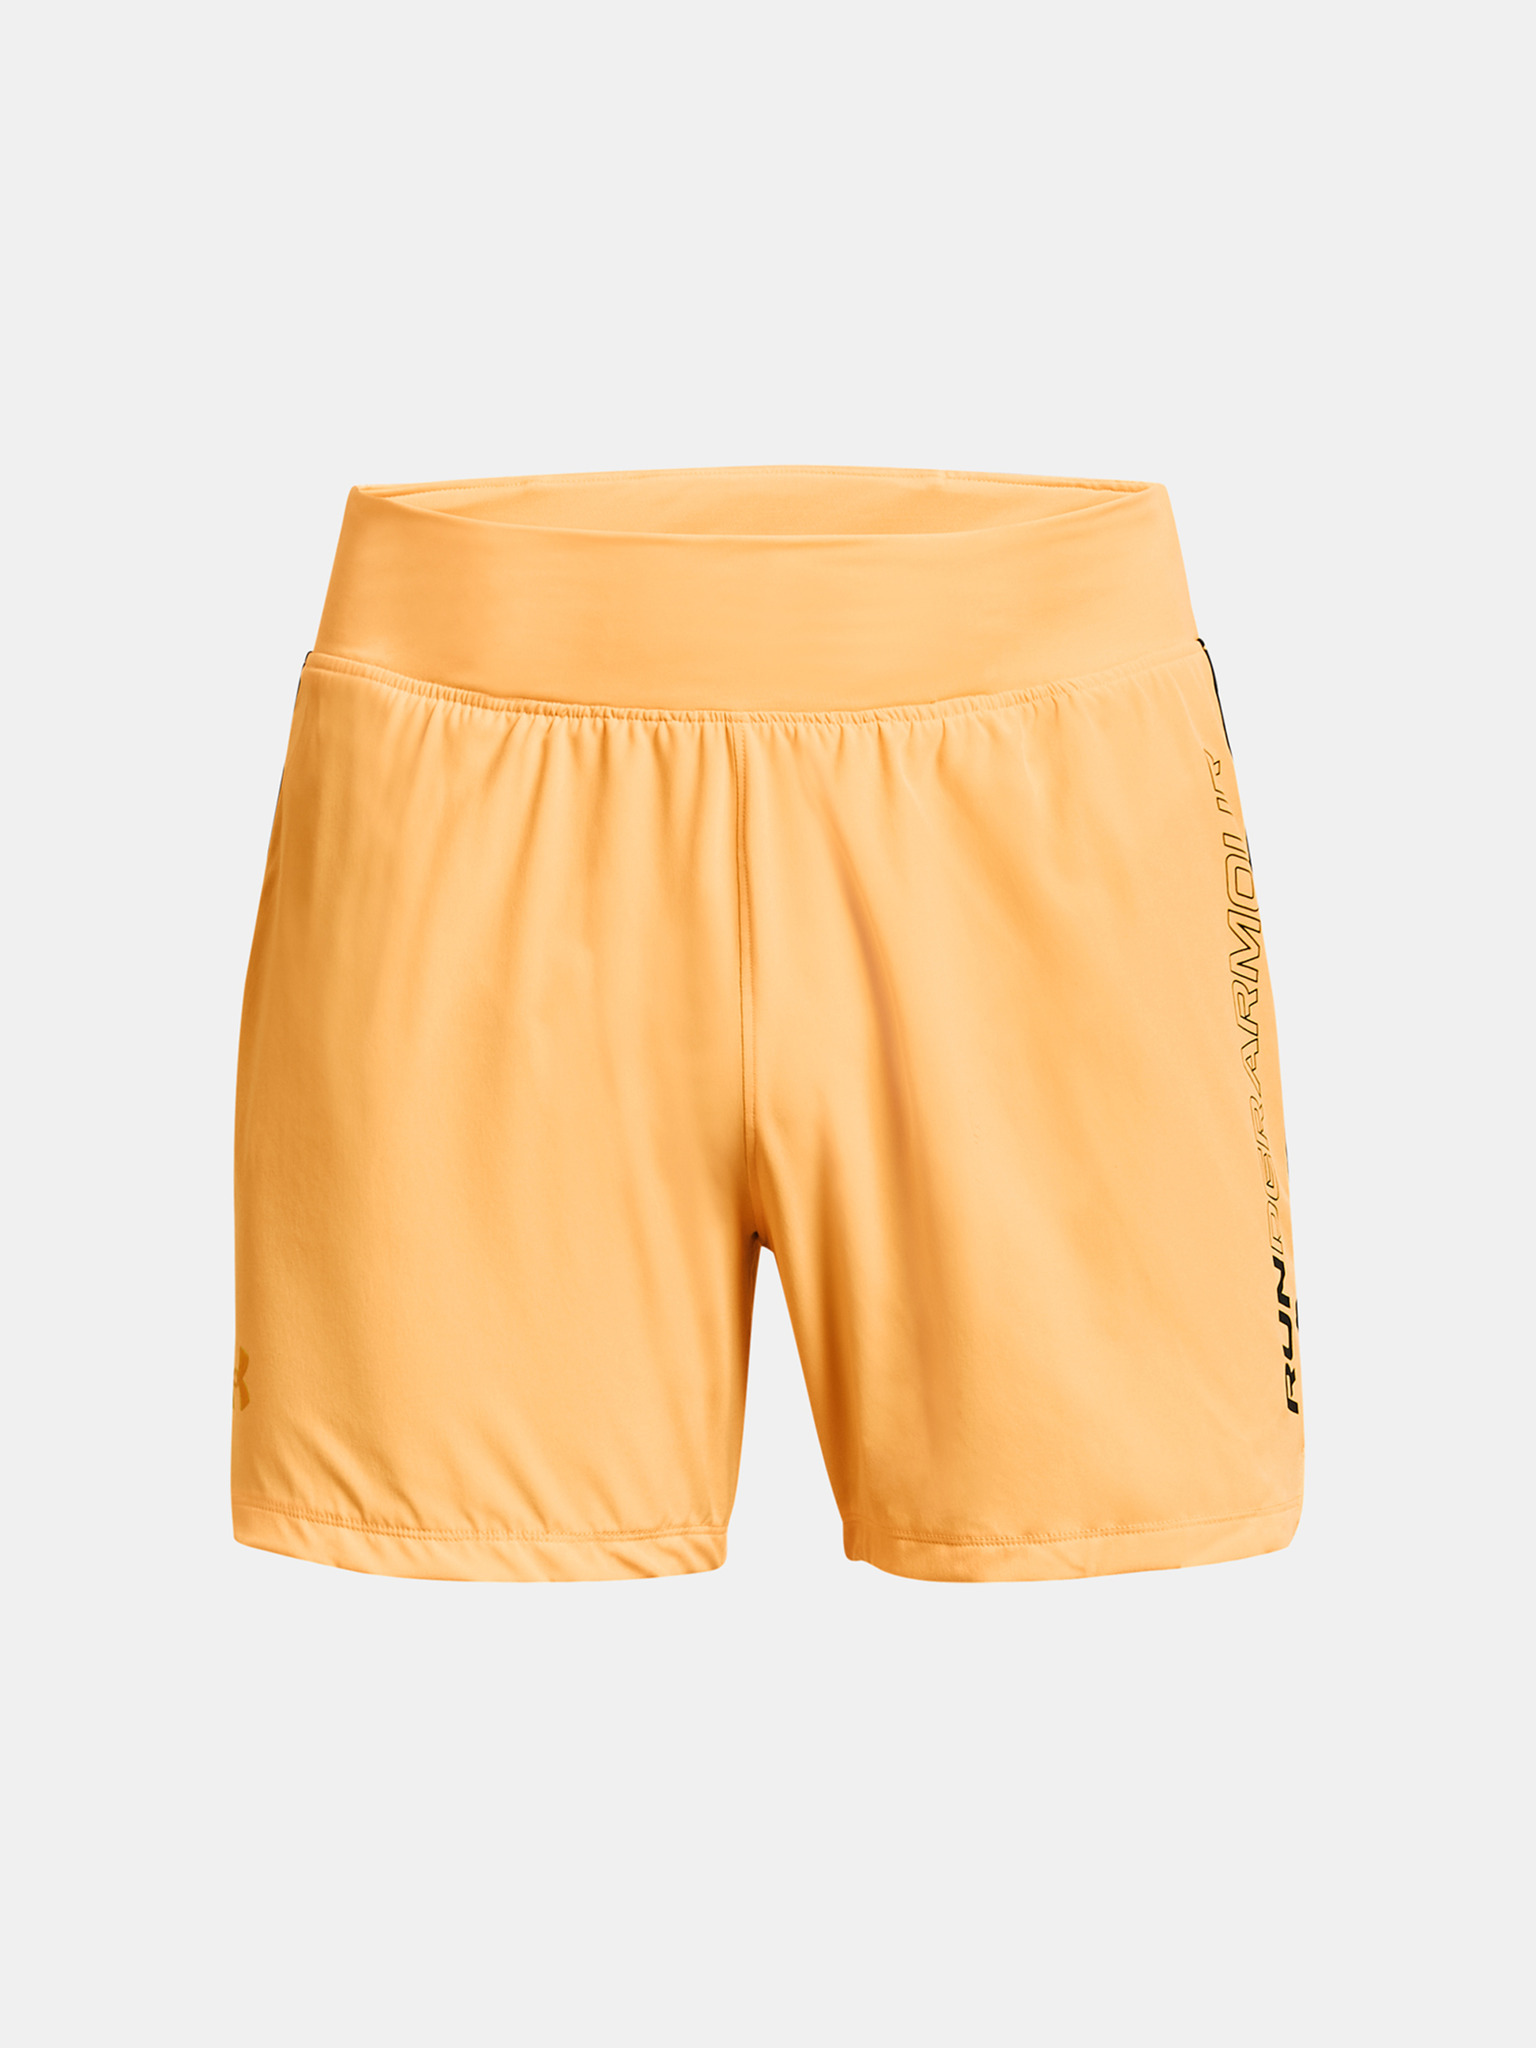 Under Armour Mens Speedpocket 5 Inch Running Shorts - Orange